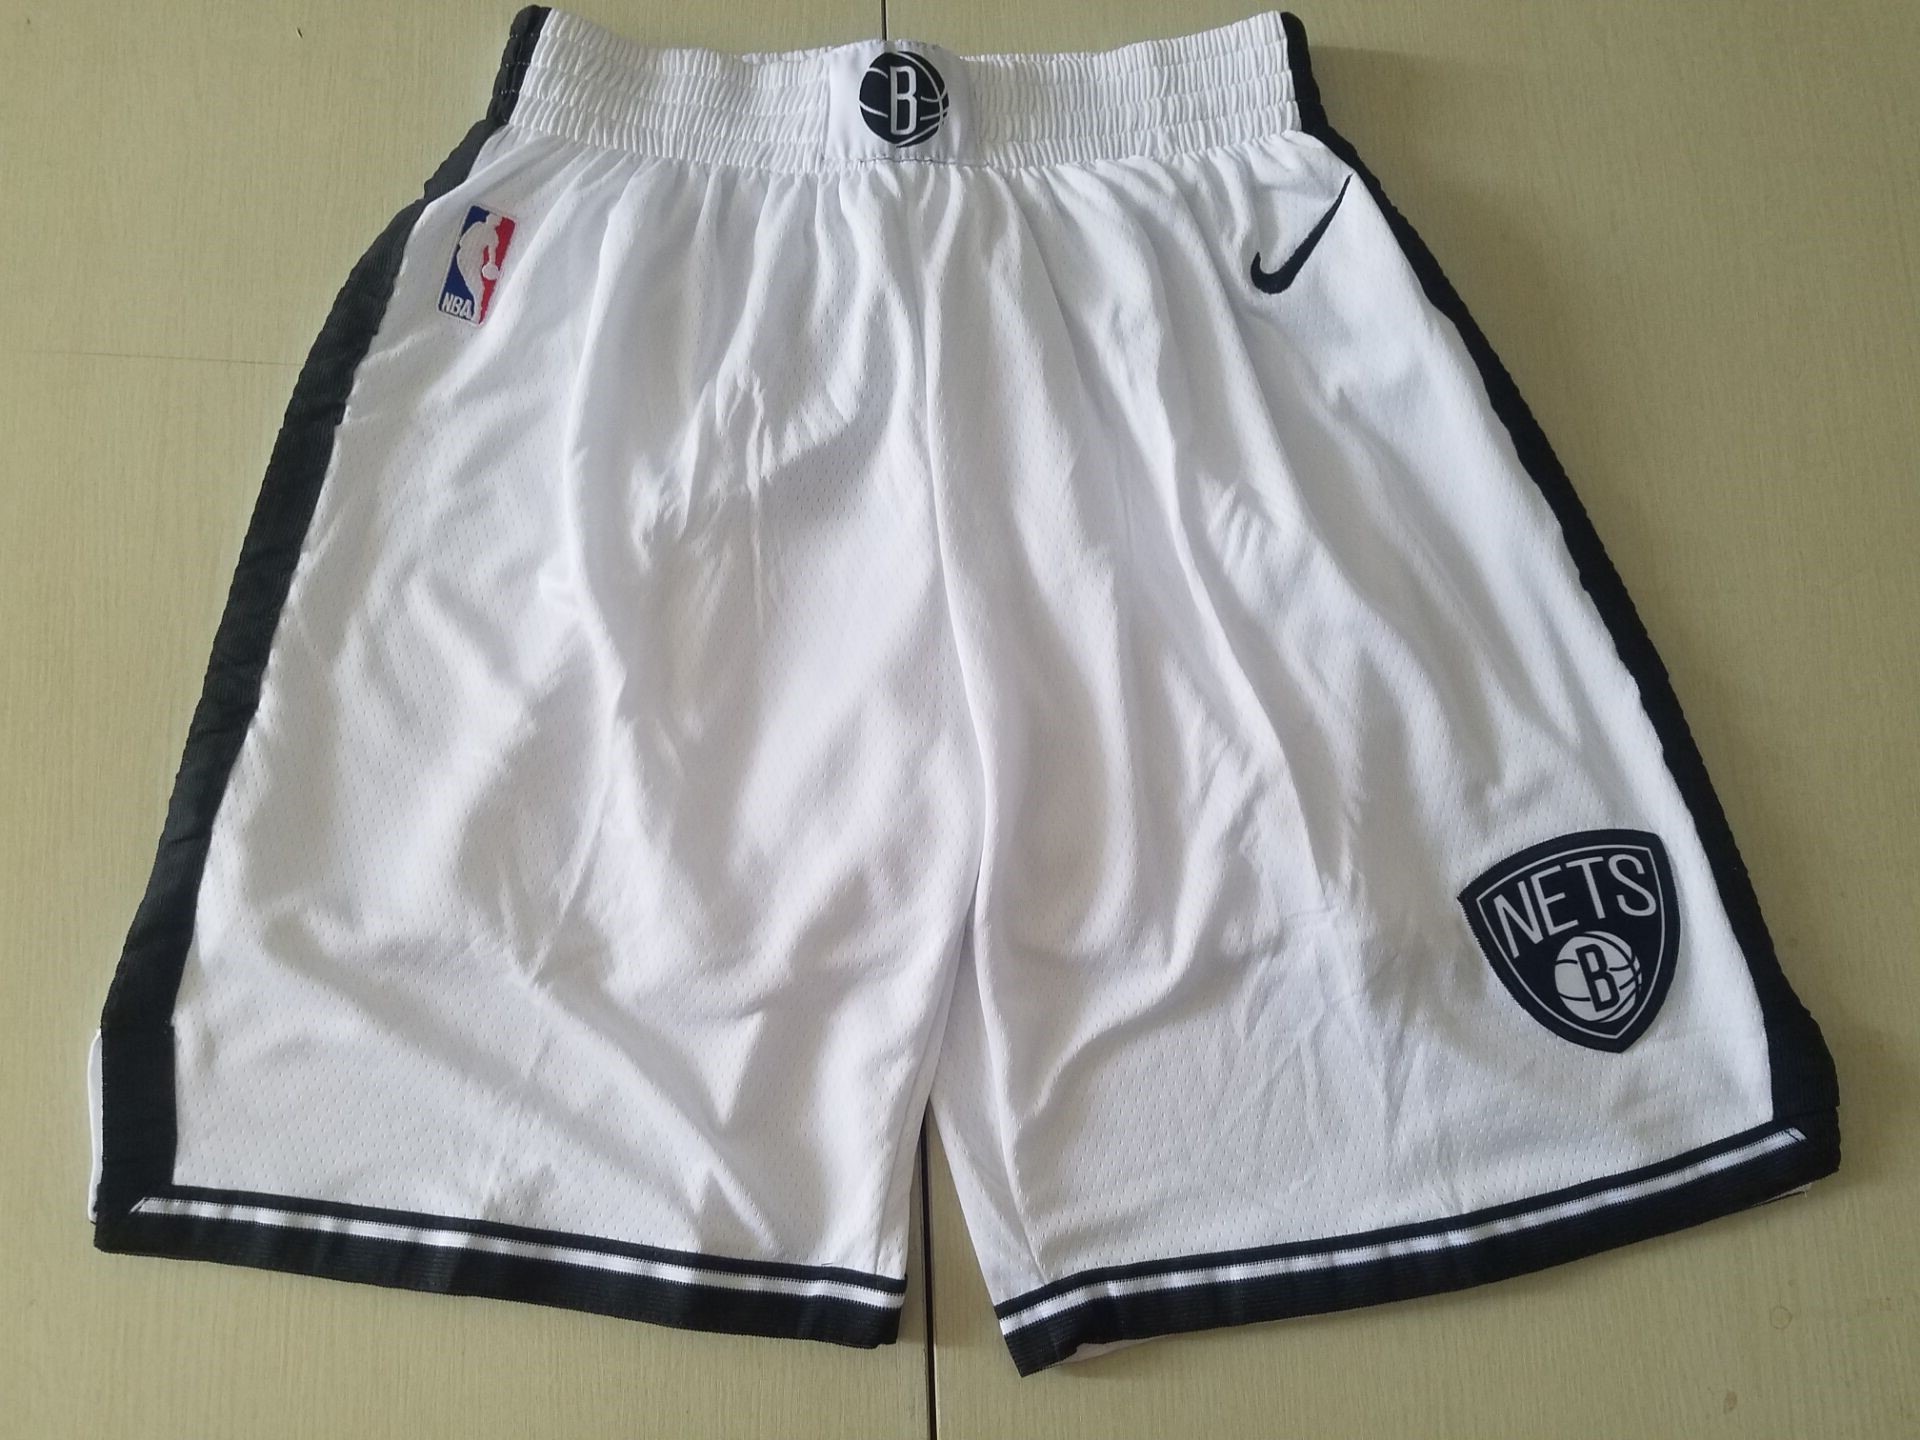 Youth NBA Nike Brooklyn Nets white shorts